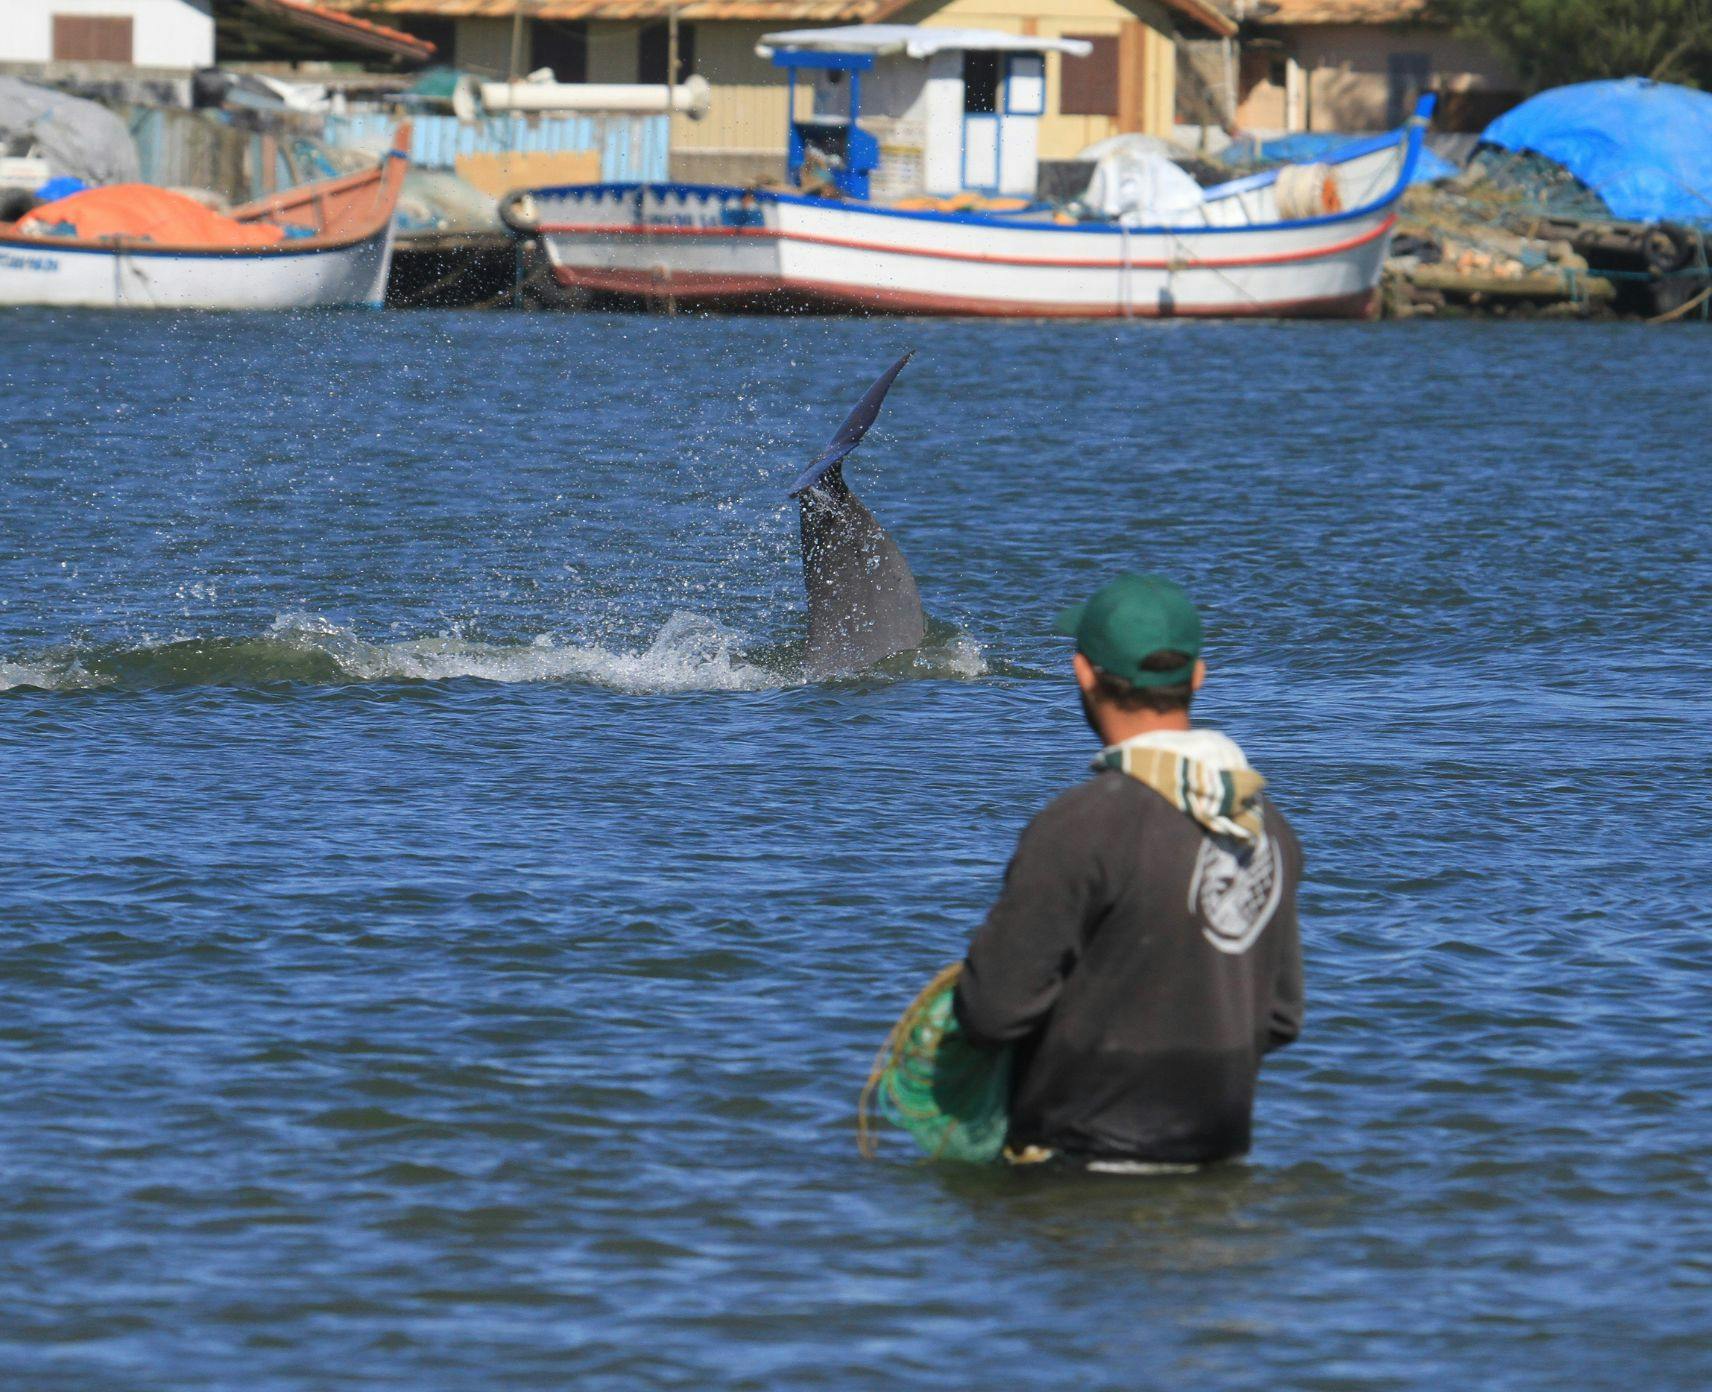 A fisher in Laguna, Brazil